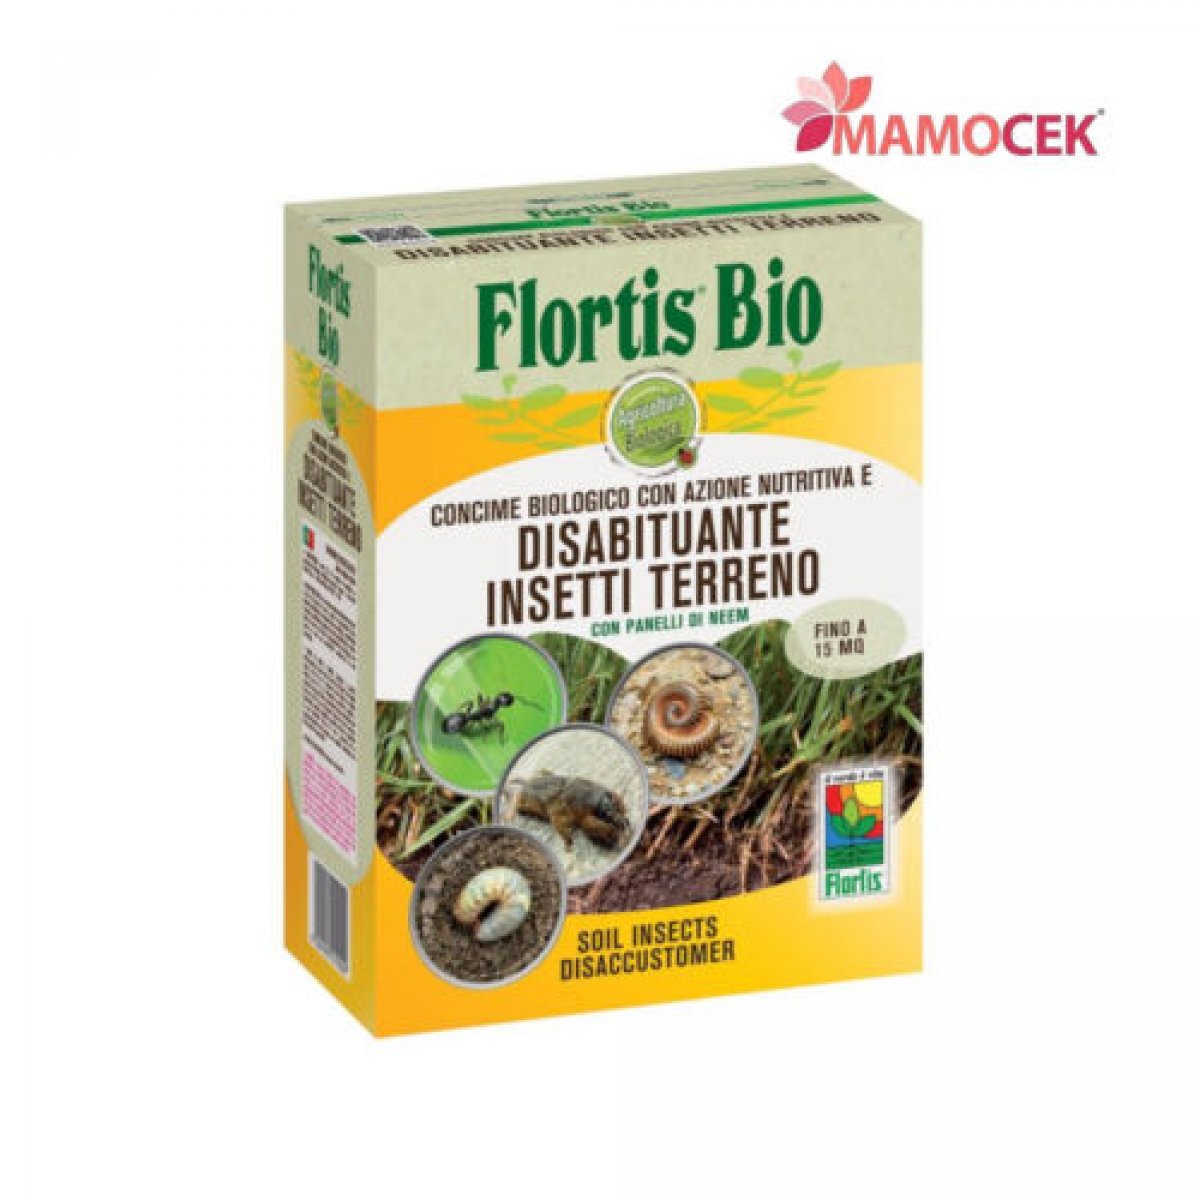 FLORTIS Disabituante insetti terreno  concime polvere biologico conf. 1,5 kg